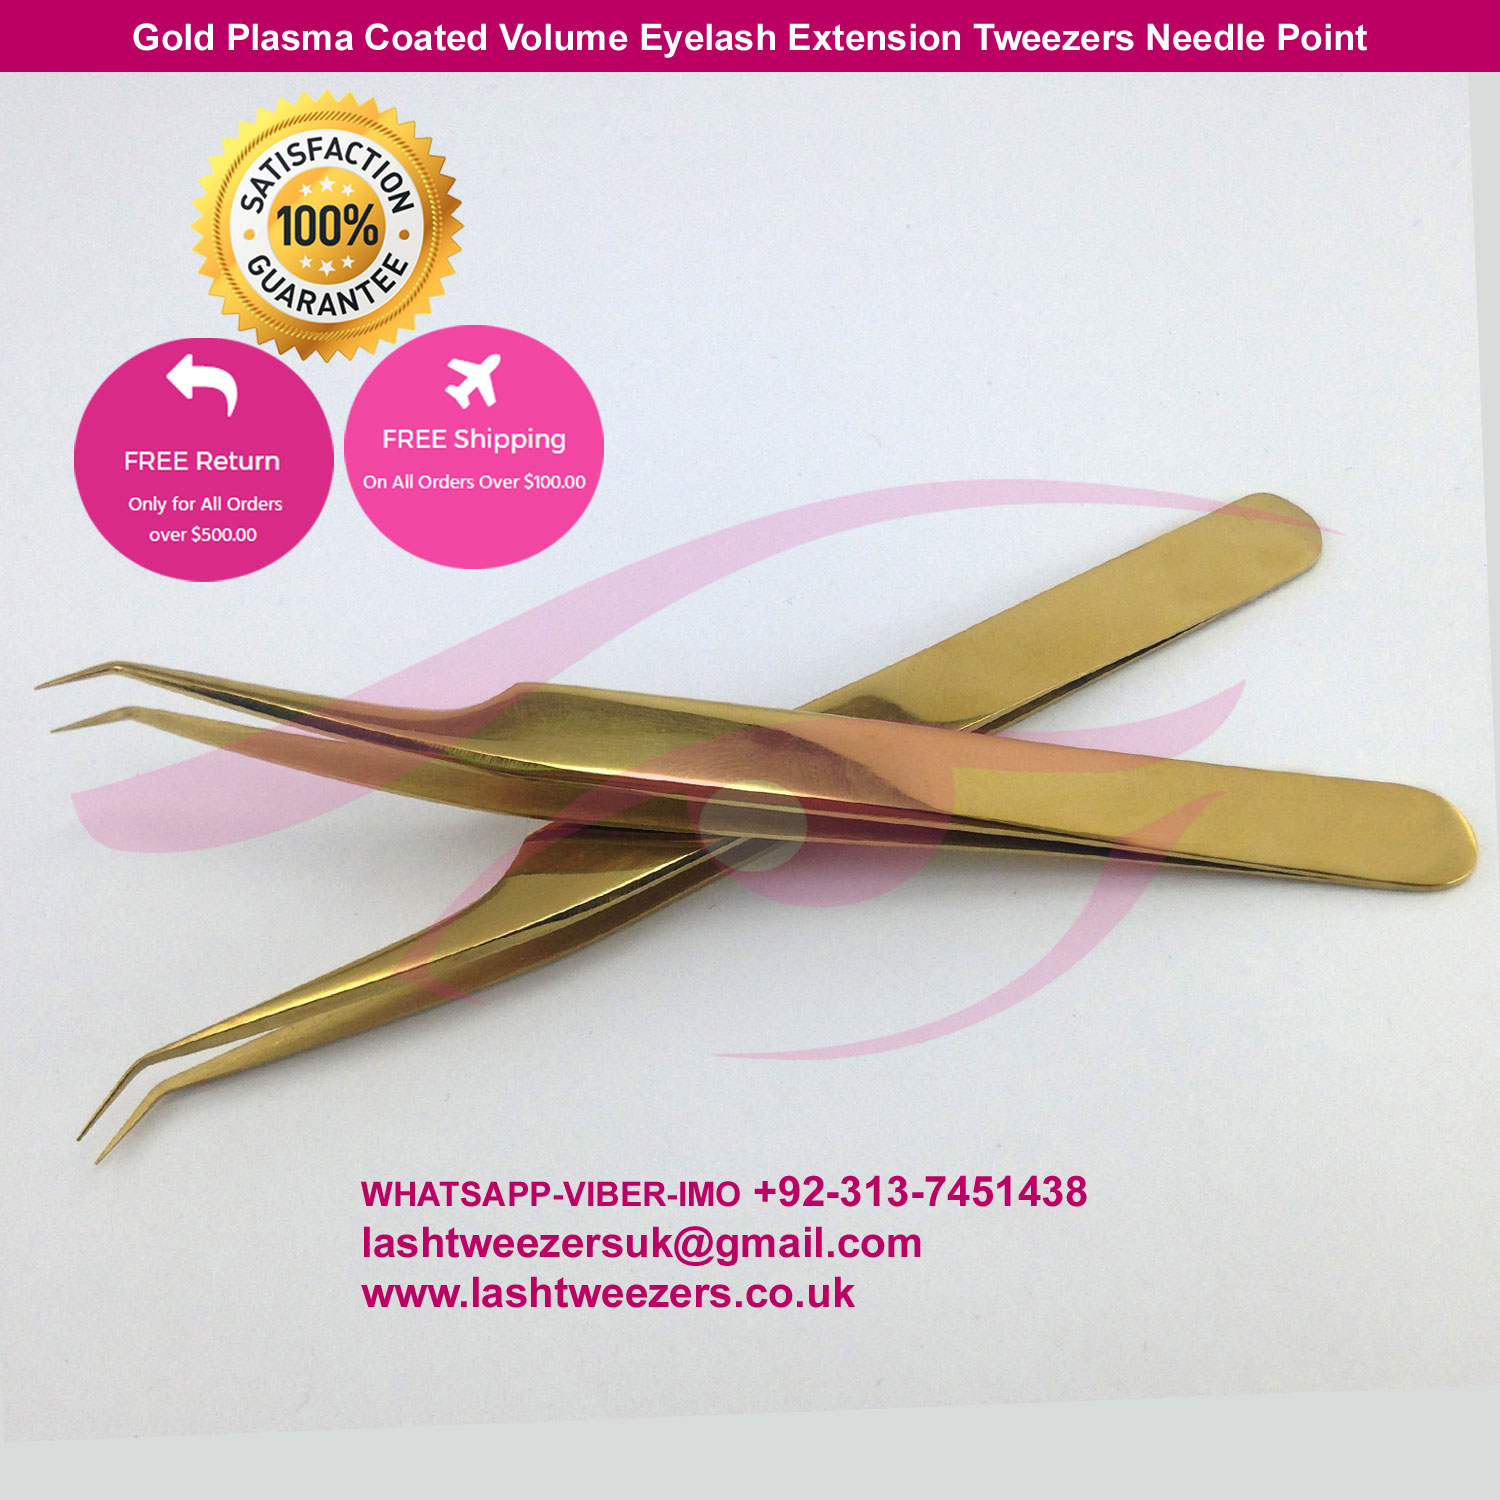 Gold Plasma Coated Volume Eyelash Extension Tweezers Needle Point